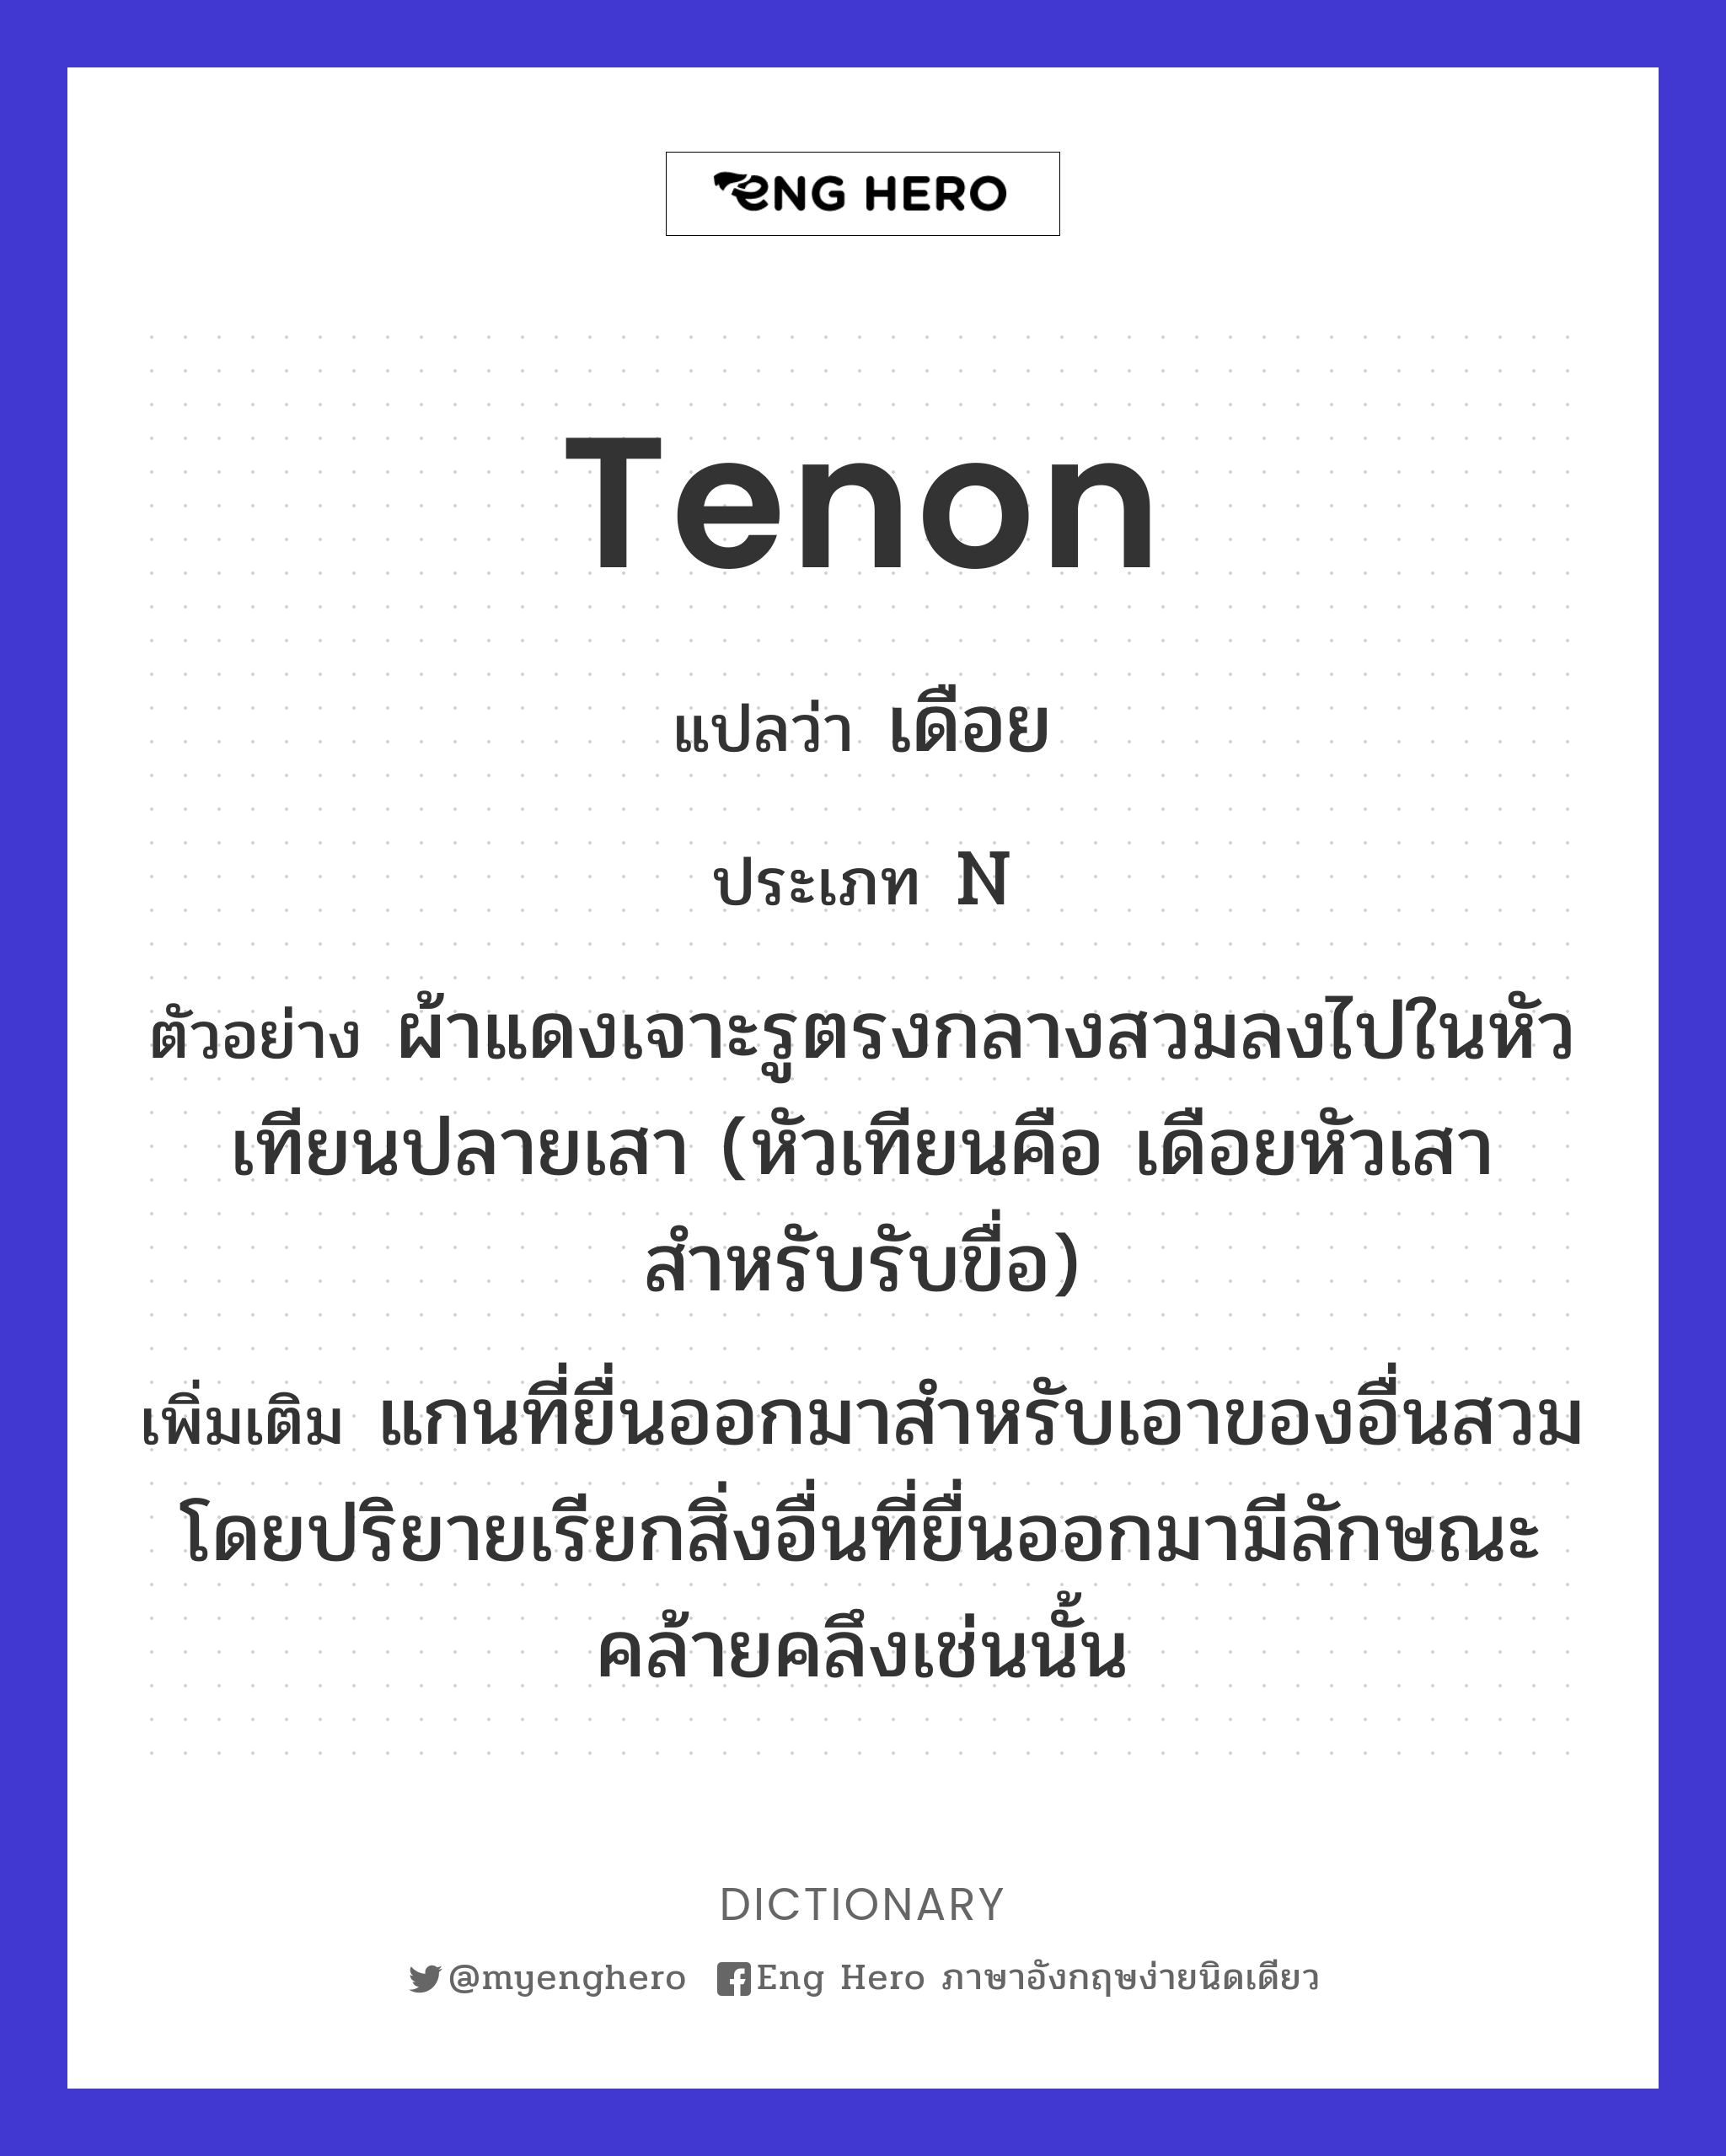 tenon